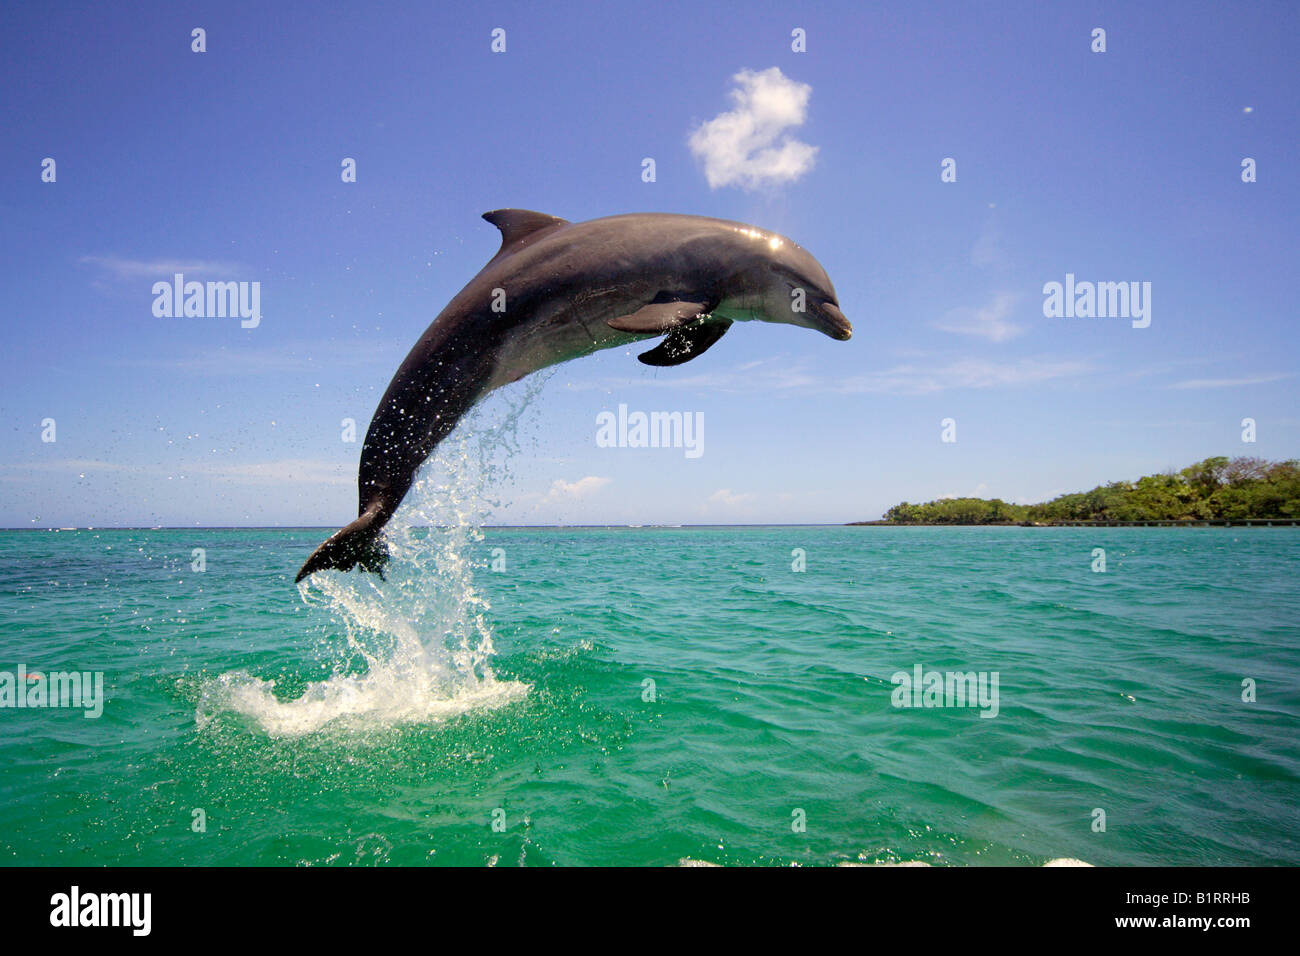 El delfín mular (Tursiops truncatus) saltando fuera del agua, el Caribe, Roatán, Honduras, América Central Foto de stock